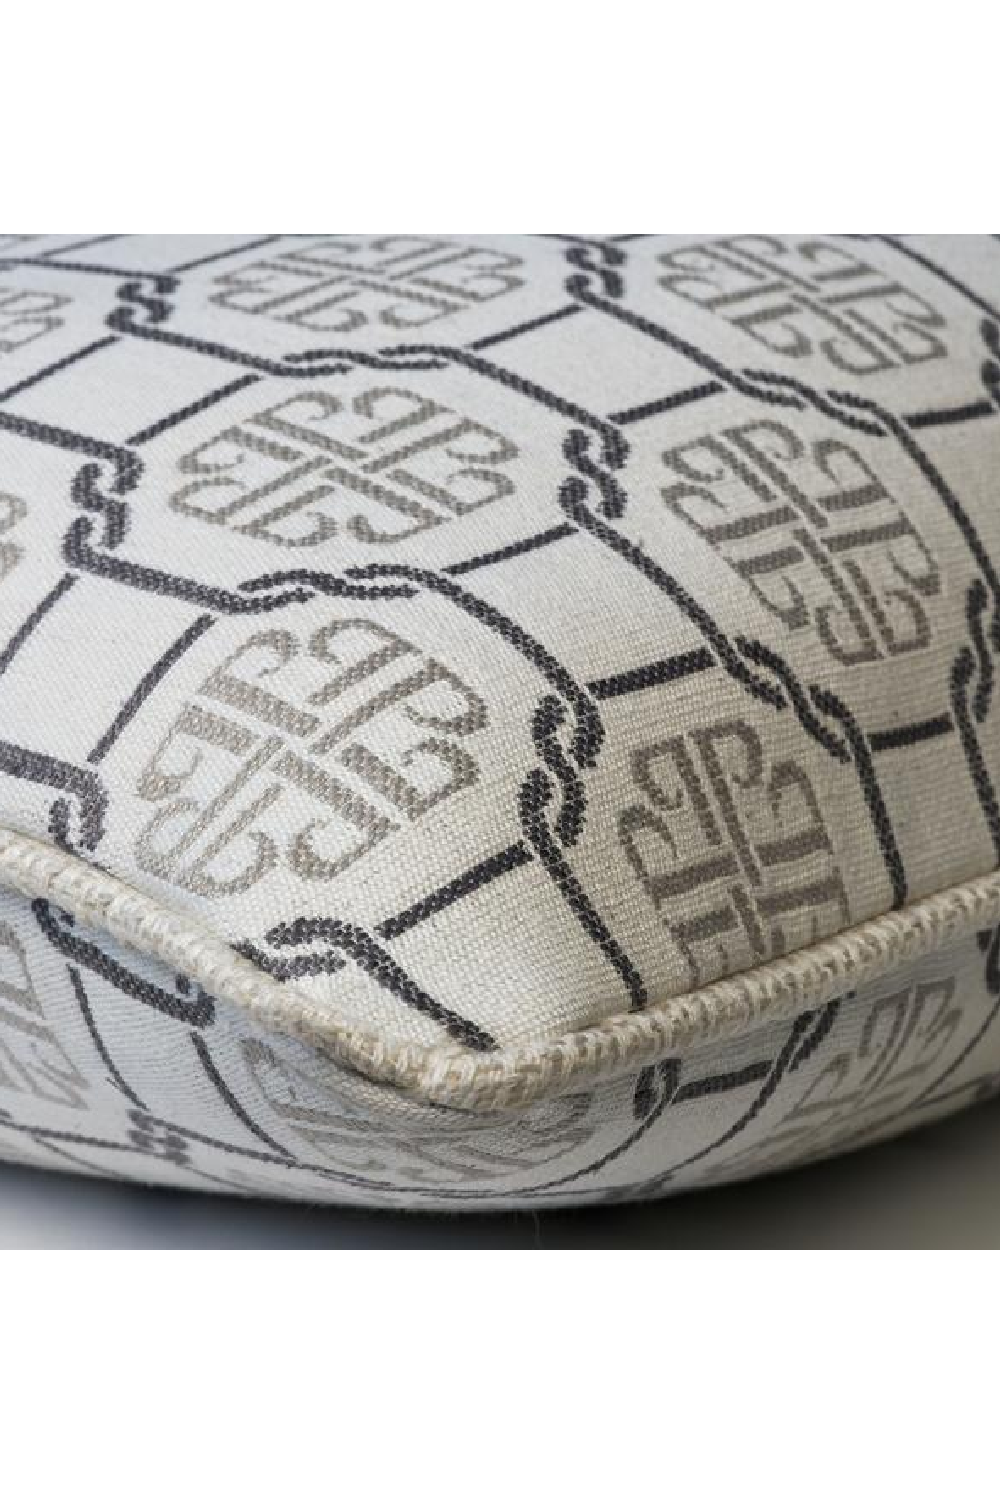 Linked Pattern Contemporary Cushion | Andrew Martin Petro | OROA